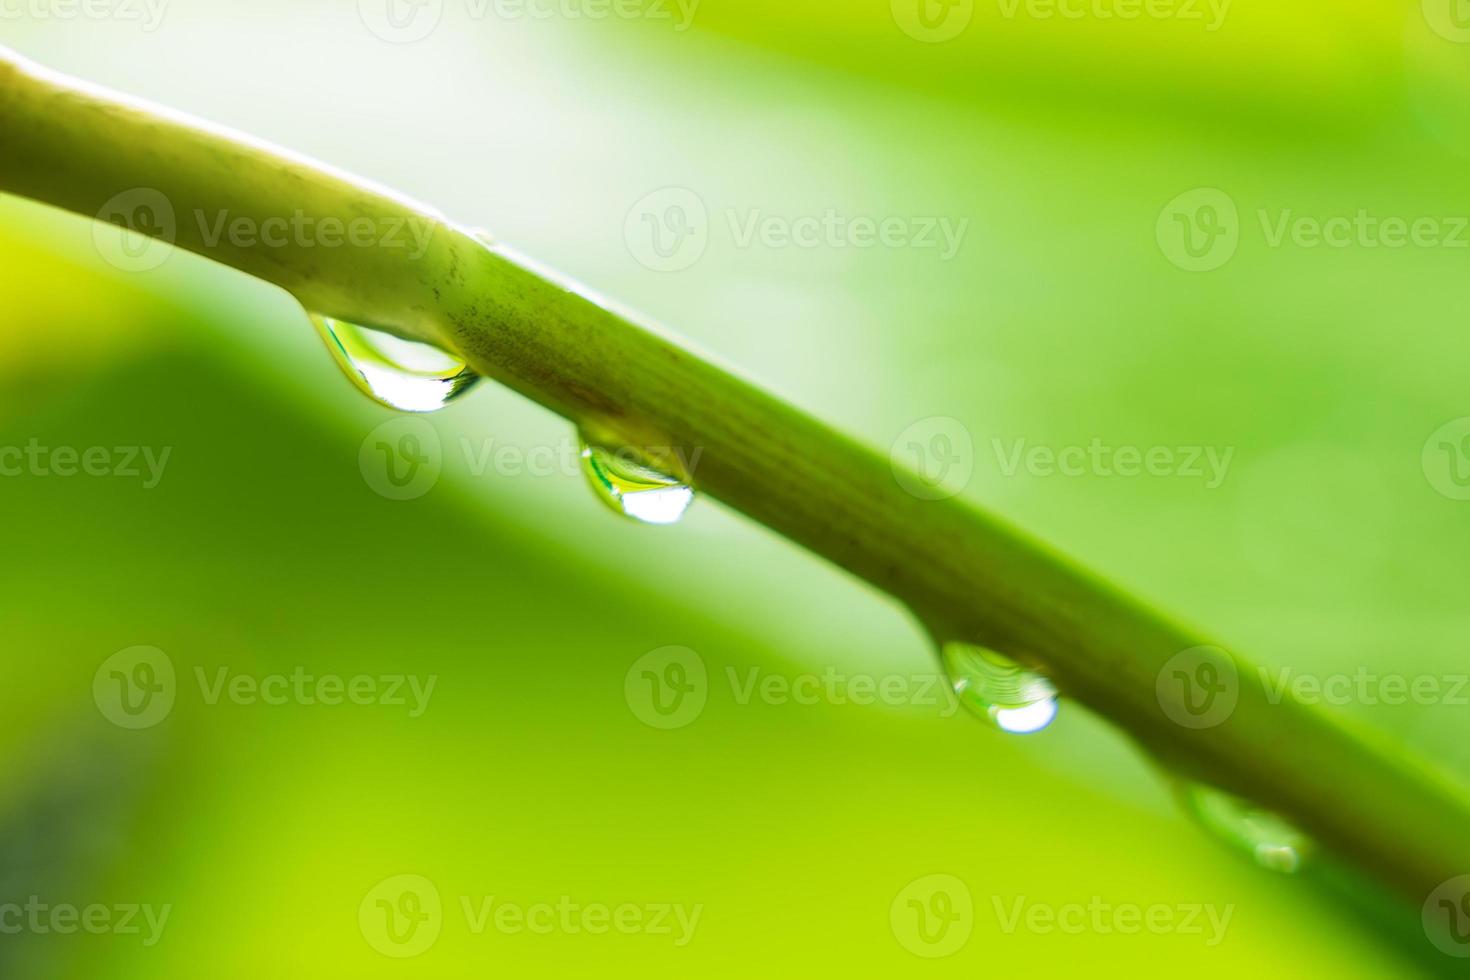 feuille verte avec des gouttes d'eau de la pluie dans le jardin photo